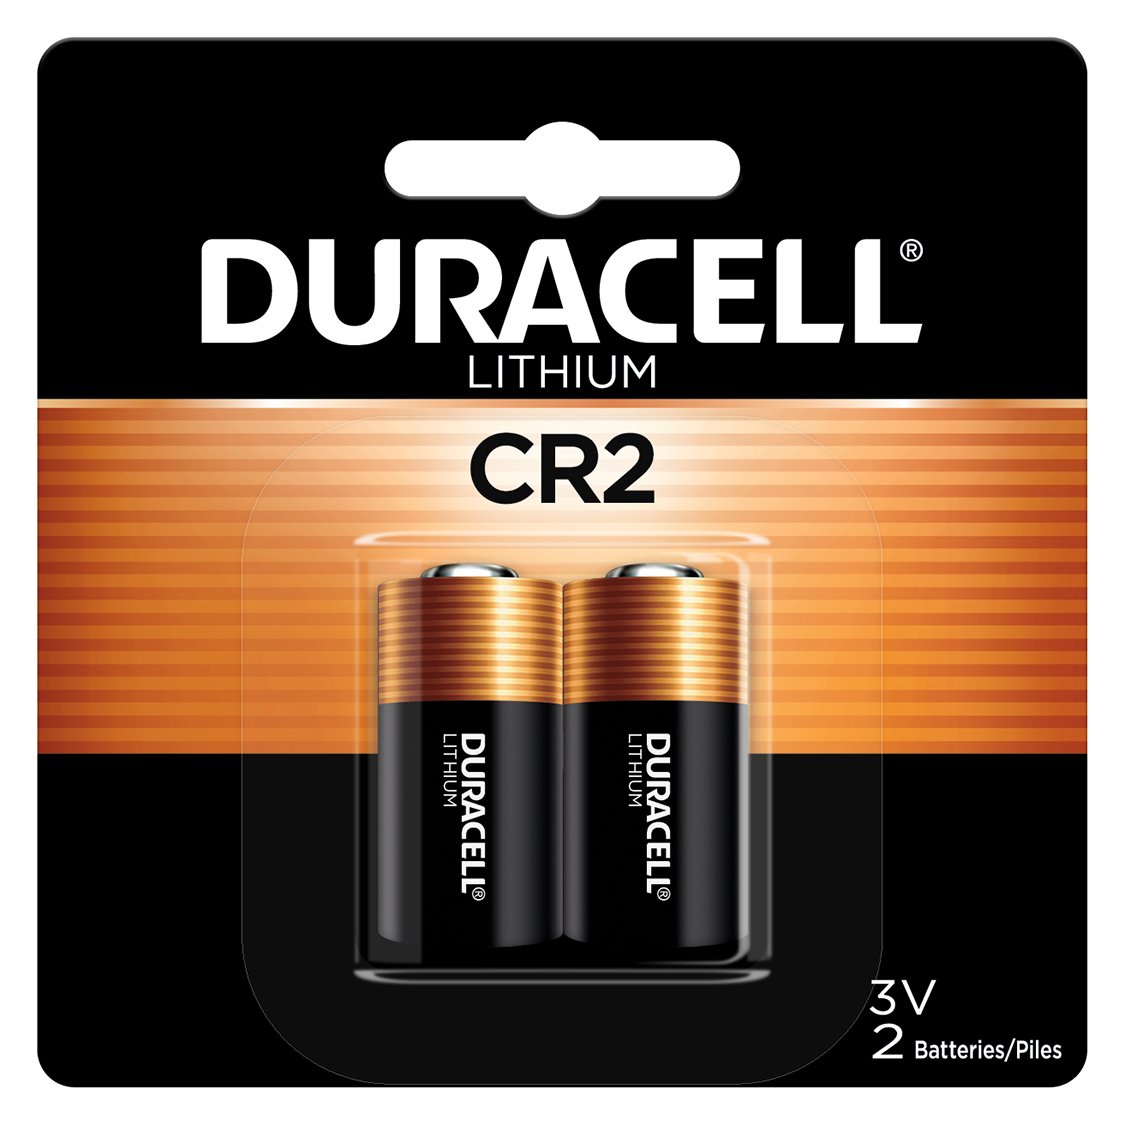 Duracell CR2 3V Lithium Battery